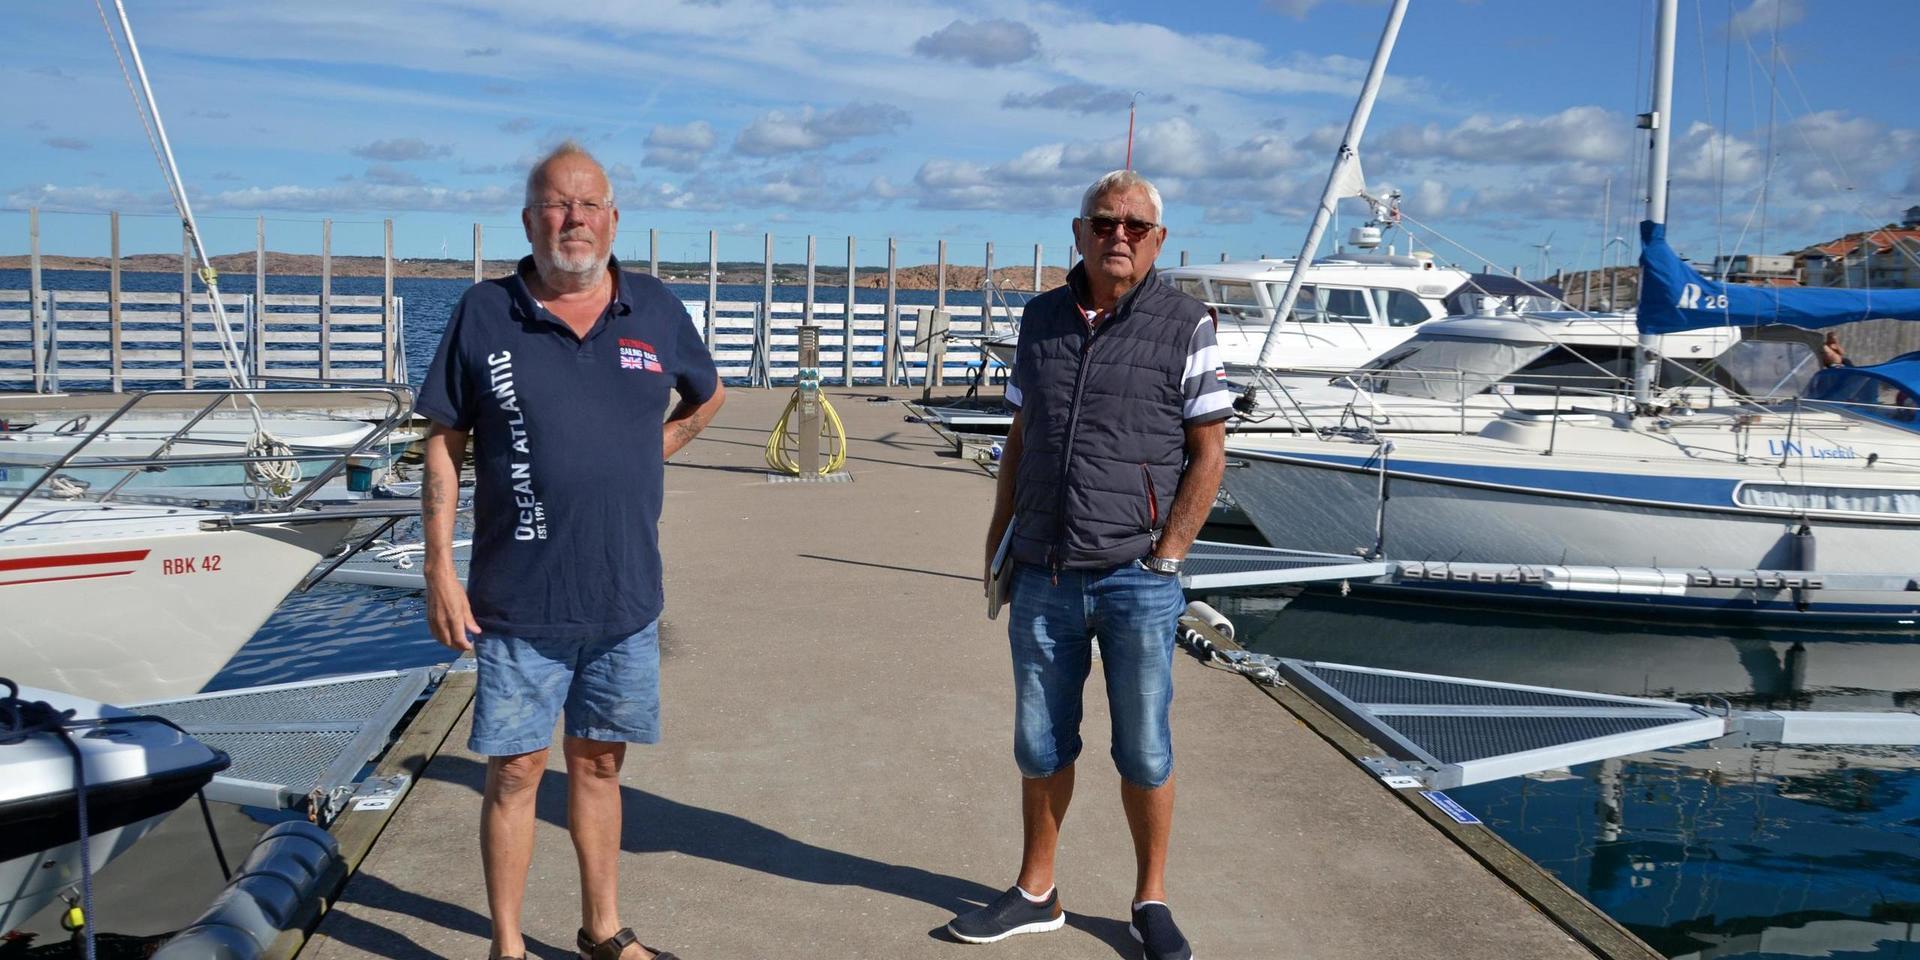 Lars Melkersson och Hasse Skarp är två av dem som hyr båtplats i Norra hamnen och som tycker att det finns problem med säkerheten som kommunen borde ta tag i.